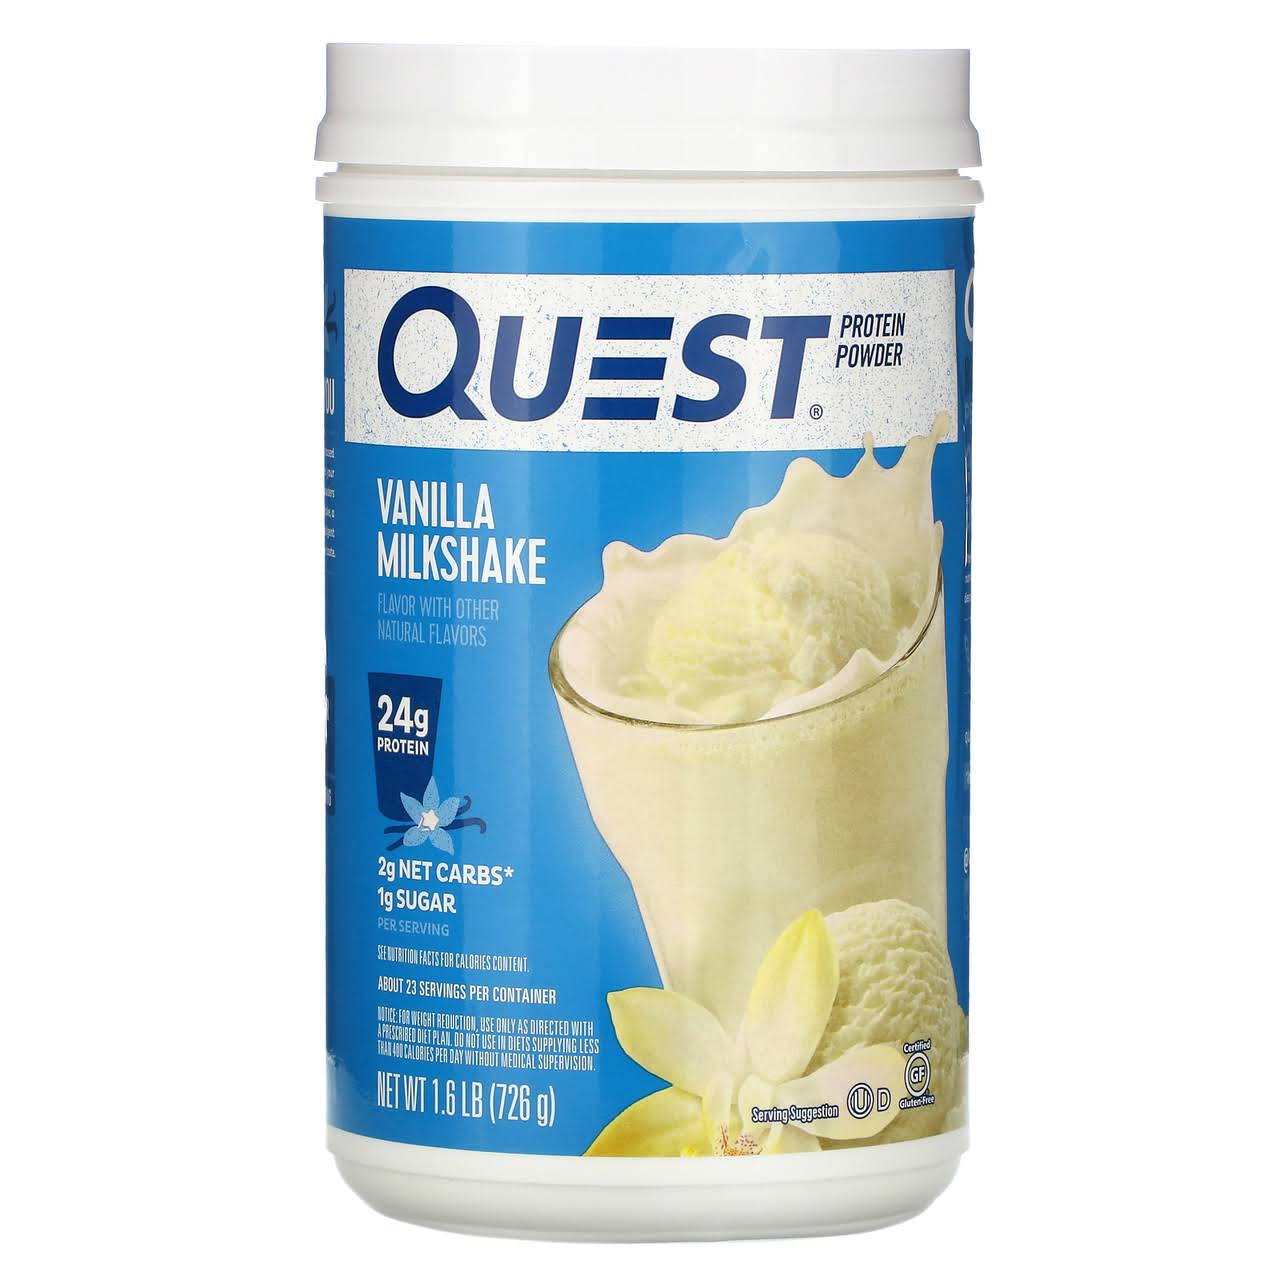 Quest Protein Powder - Vanilla Milkshake, 1.6lbs